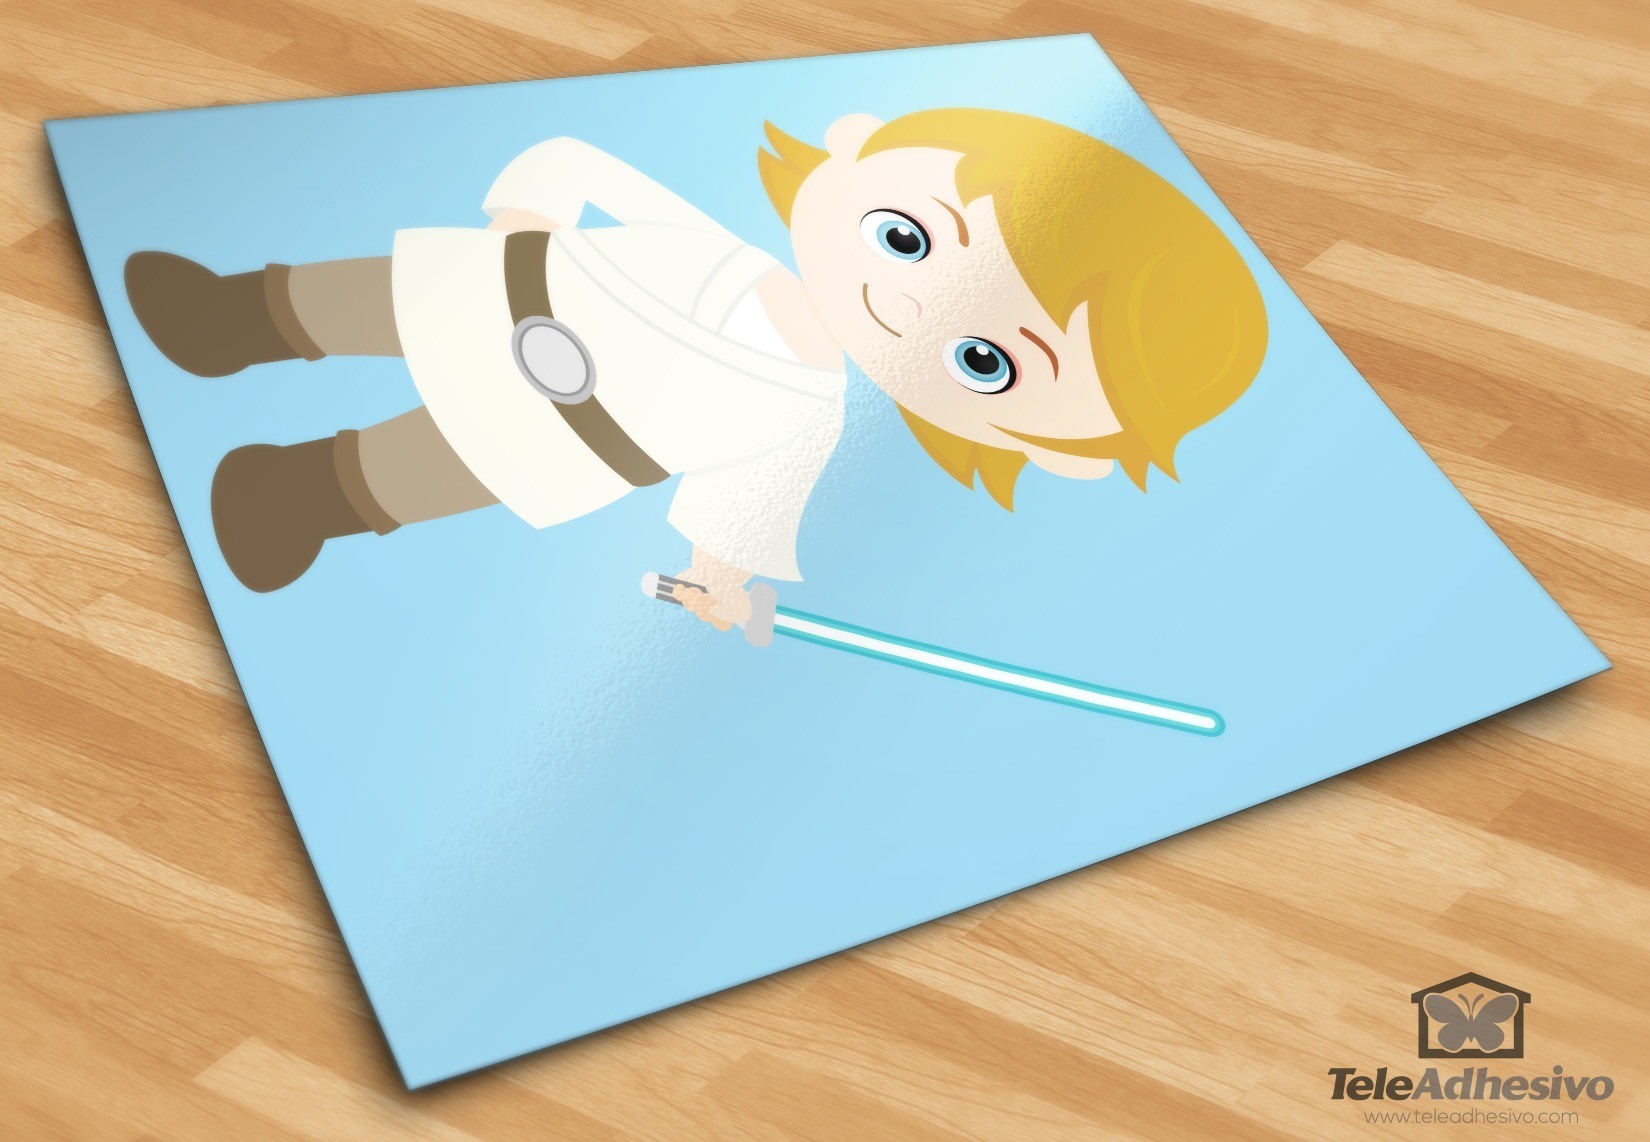 Stickers for Kids: Luke Skywalker